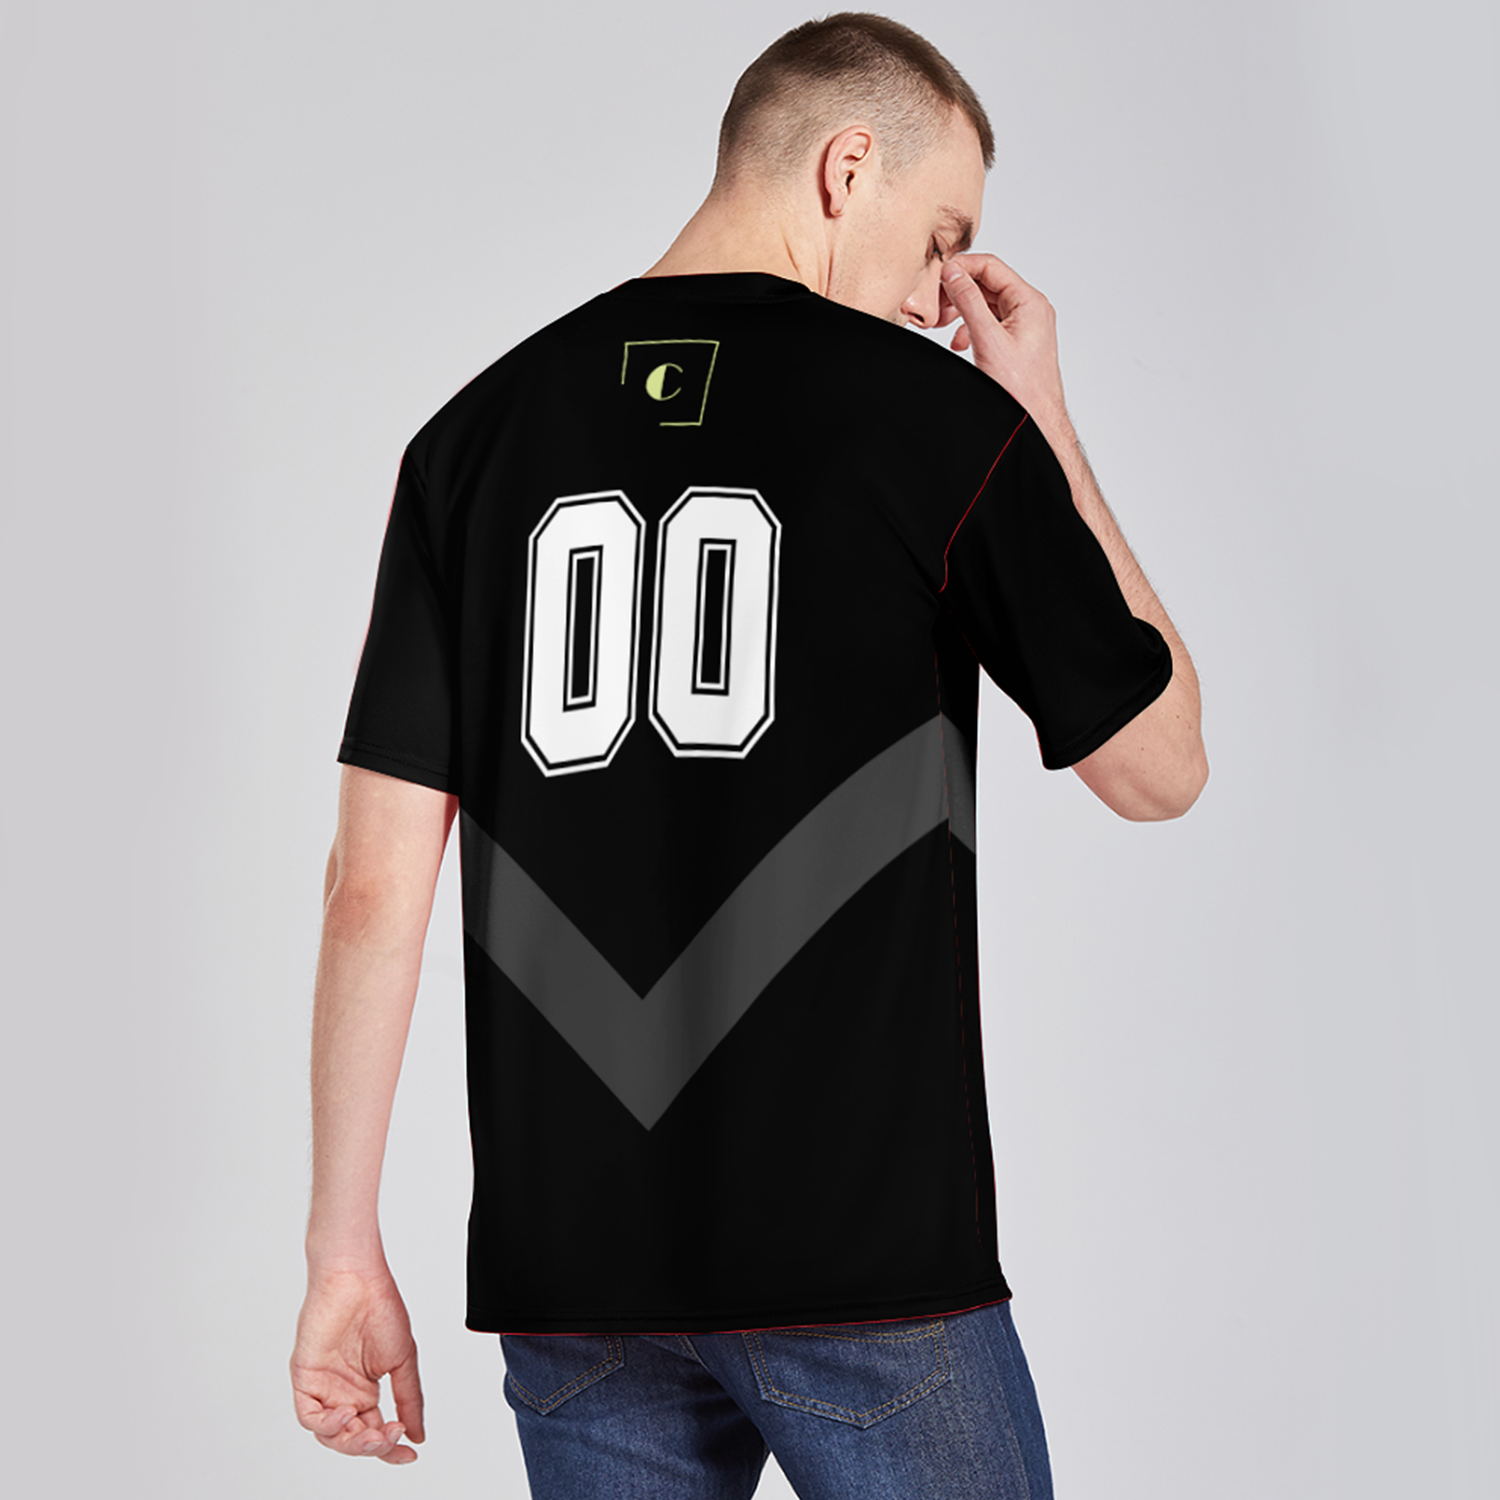 Factory Wholesale Customized OEM Full Printing Athletic Short Sleeve T-shirt Unisex